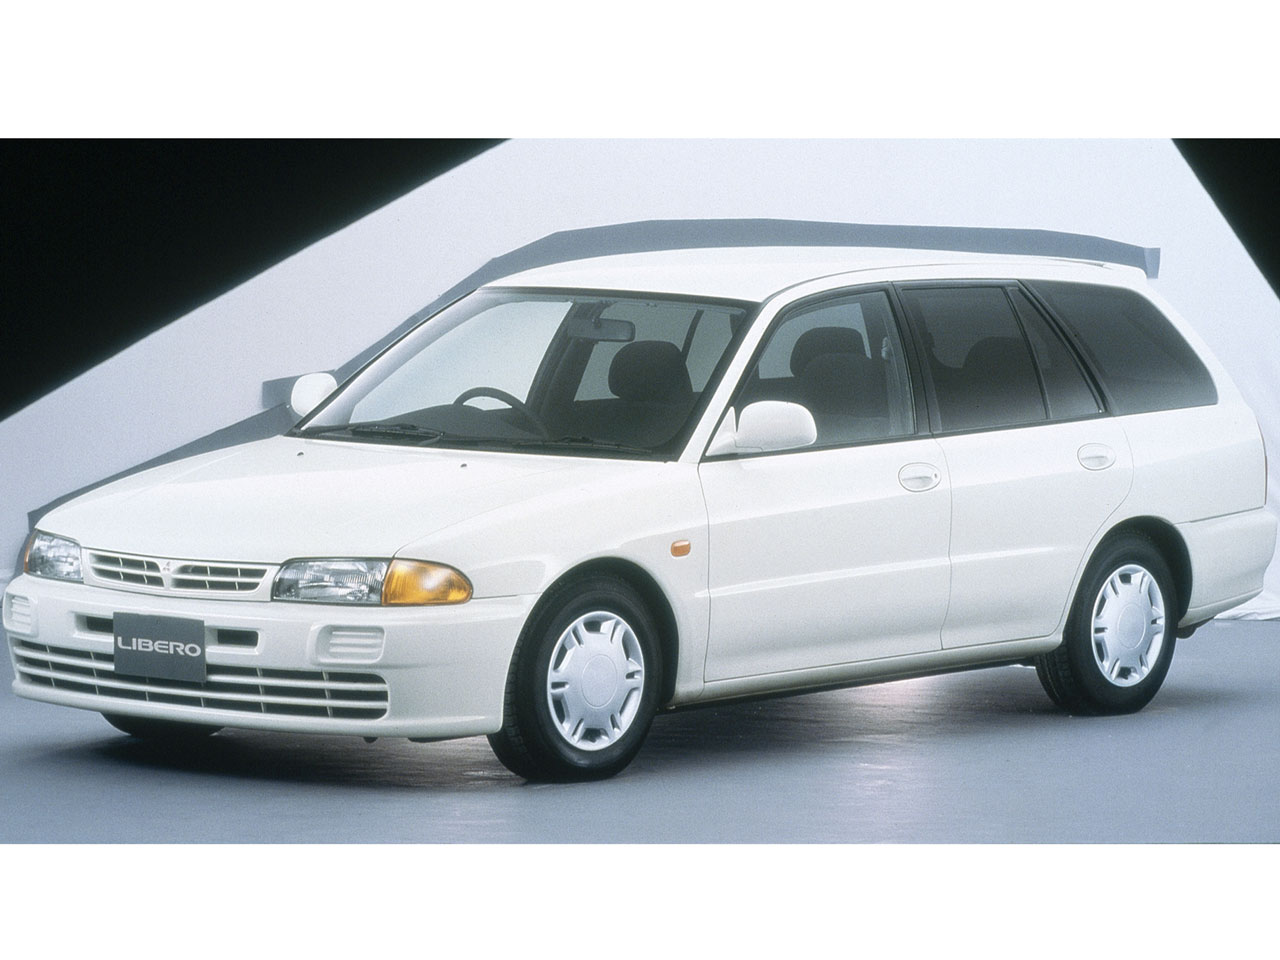 三菱 リベロ 1992年モデル 新車画像